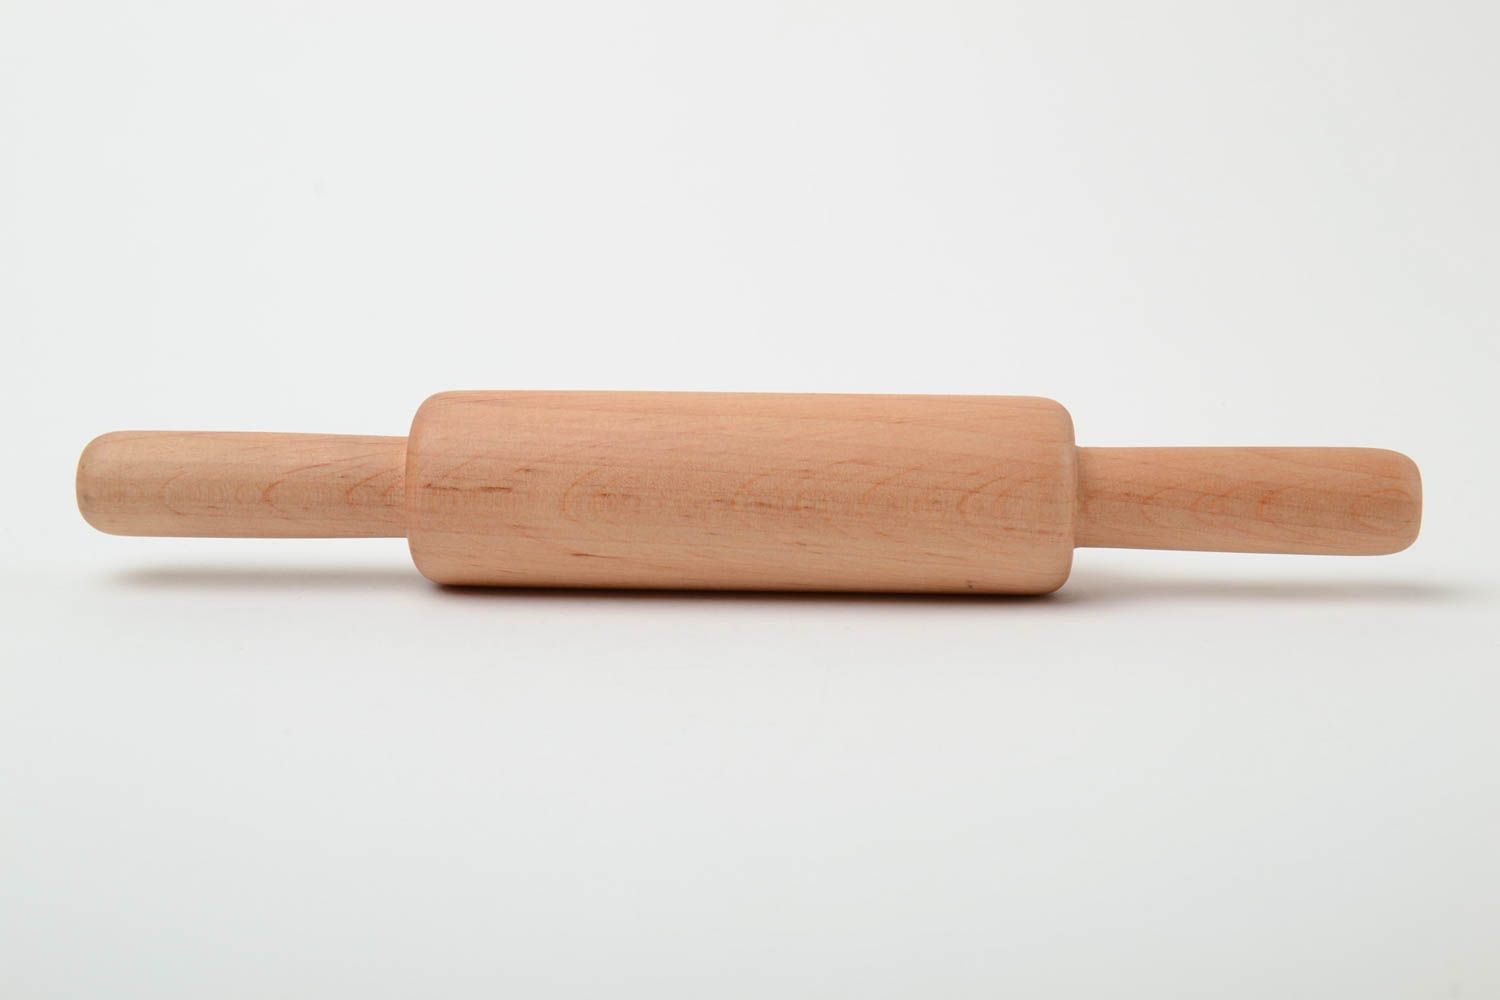 Elemento decorativo hecho a mano con forma de fruslero de madera de ojaranzo  foto 3